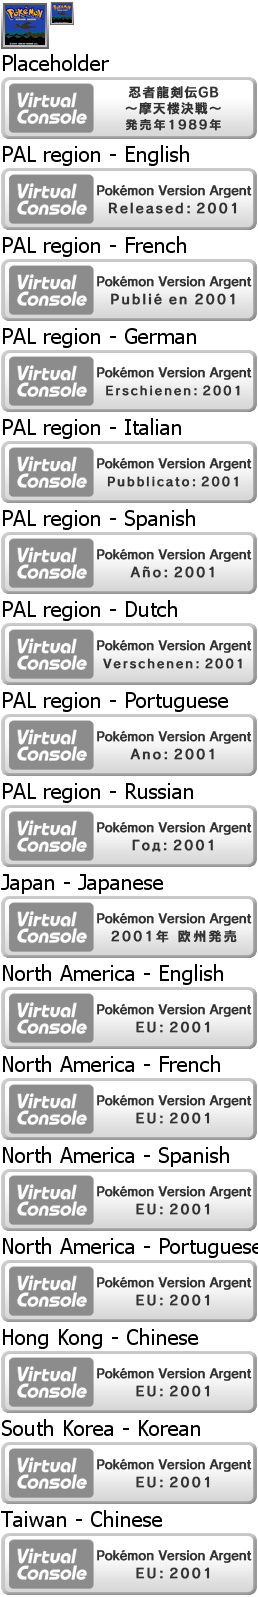 Virtual Console - Pokémon Version Argent